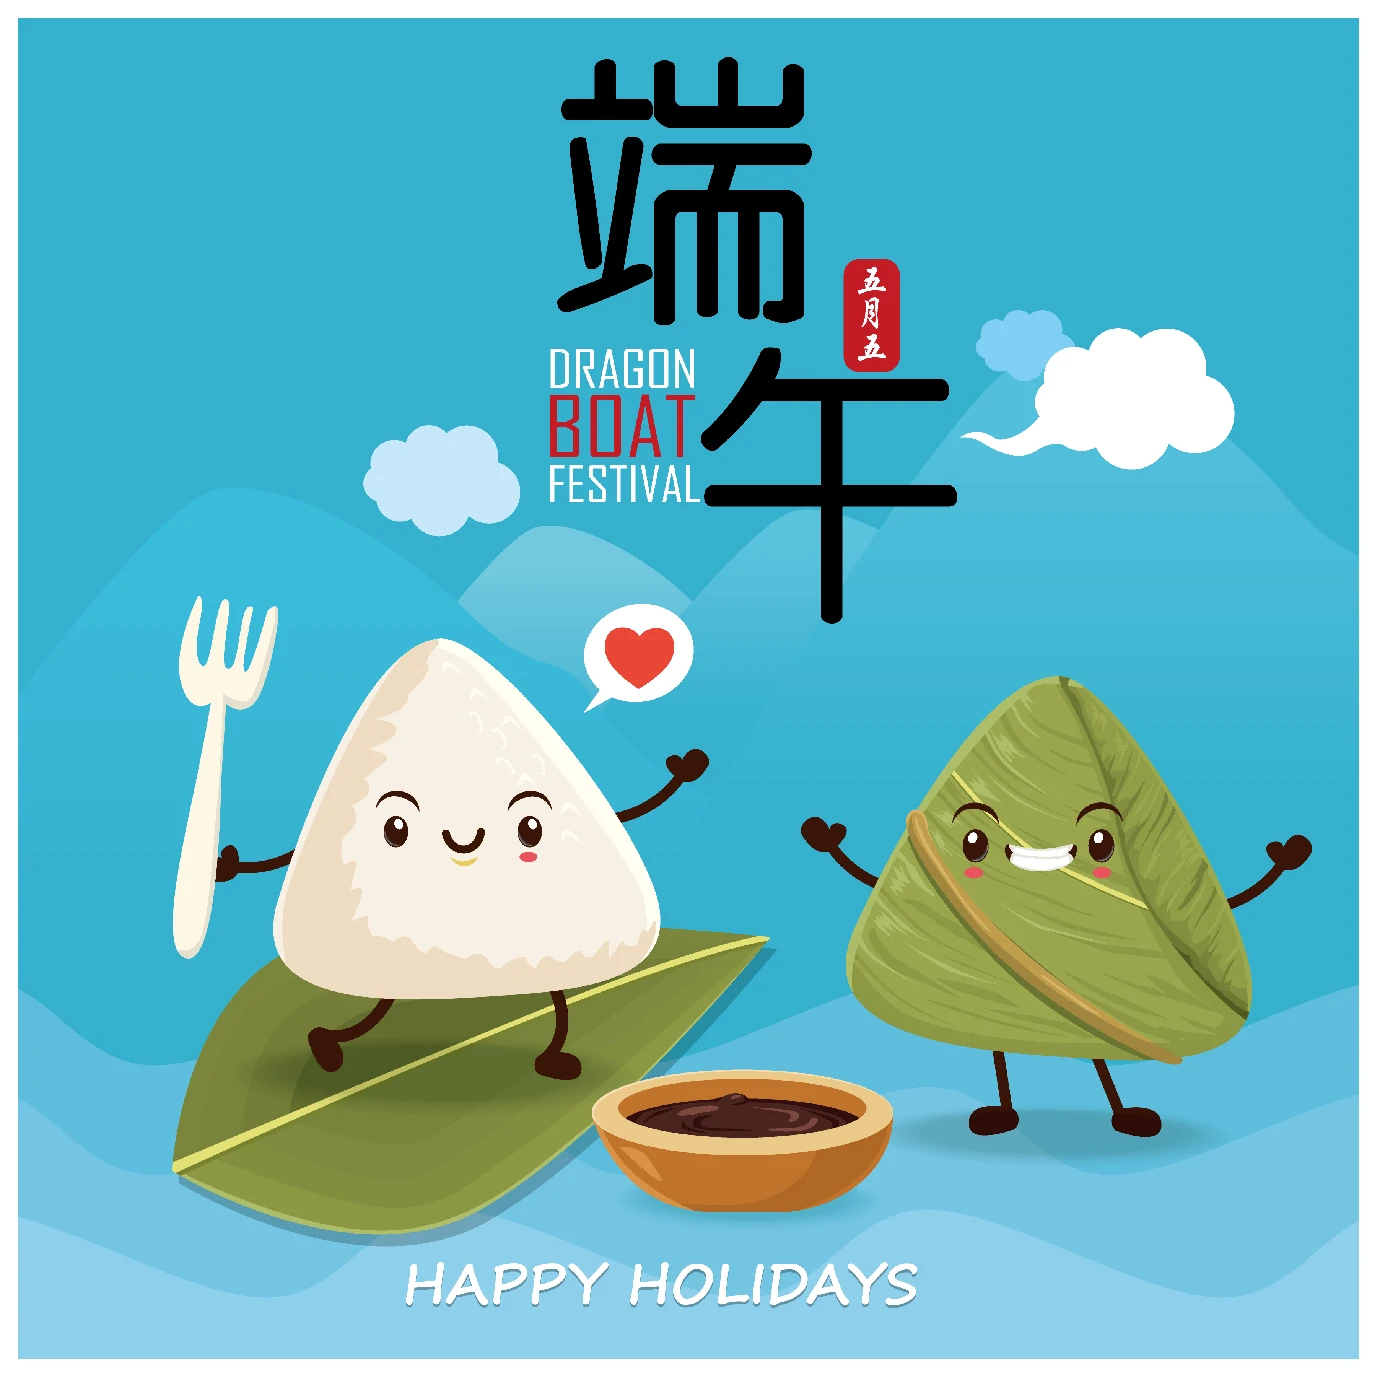 中国传统节日卡通手绘端午节赛龙舟粽子插画海报AI矢量设计素材【023】